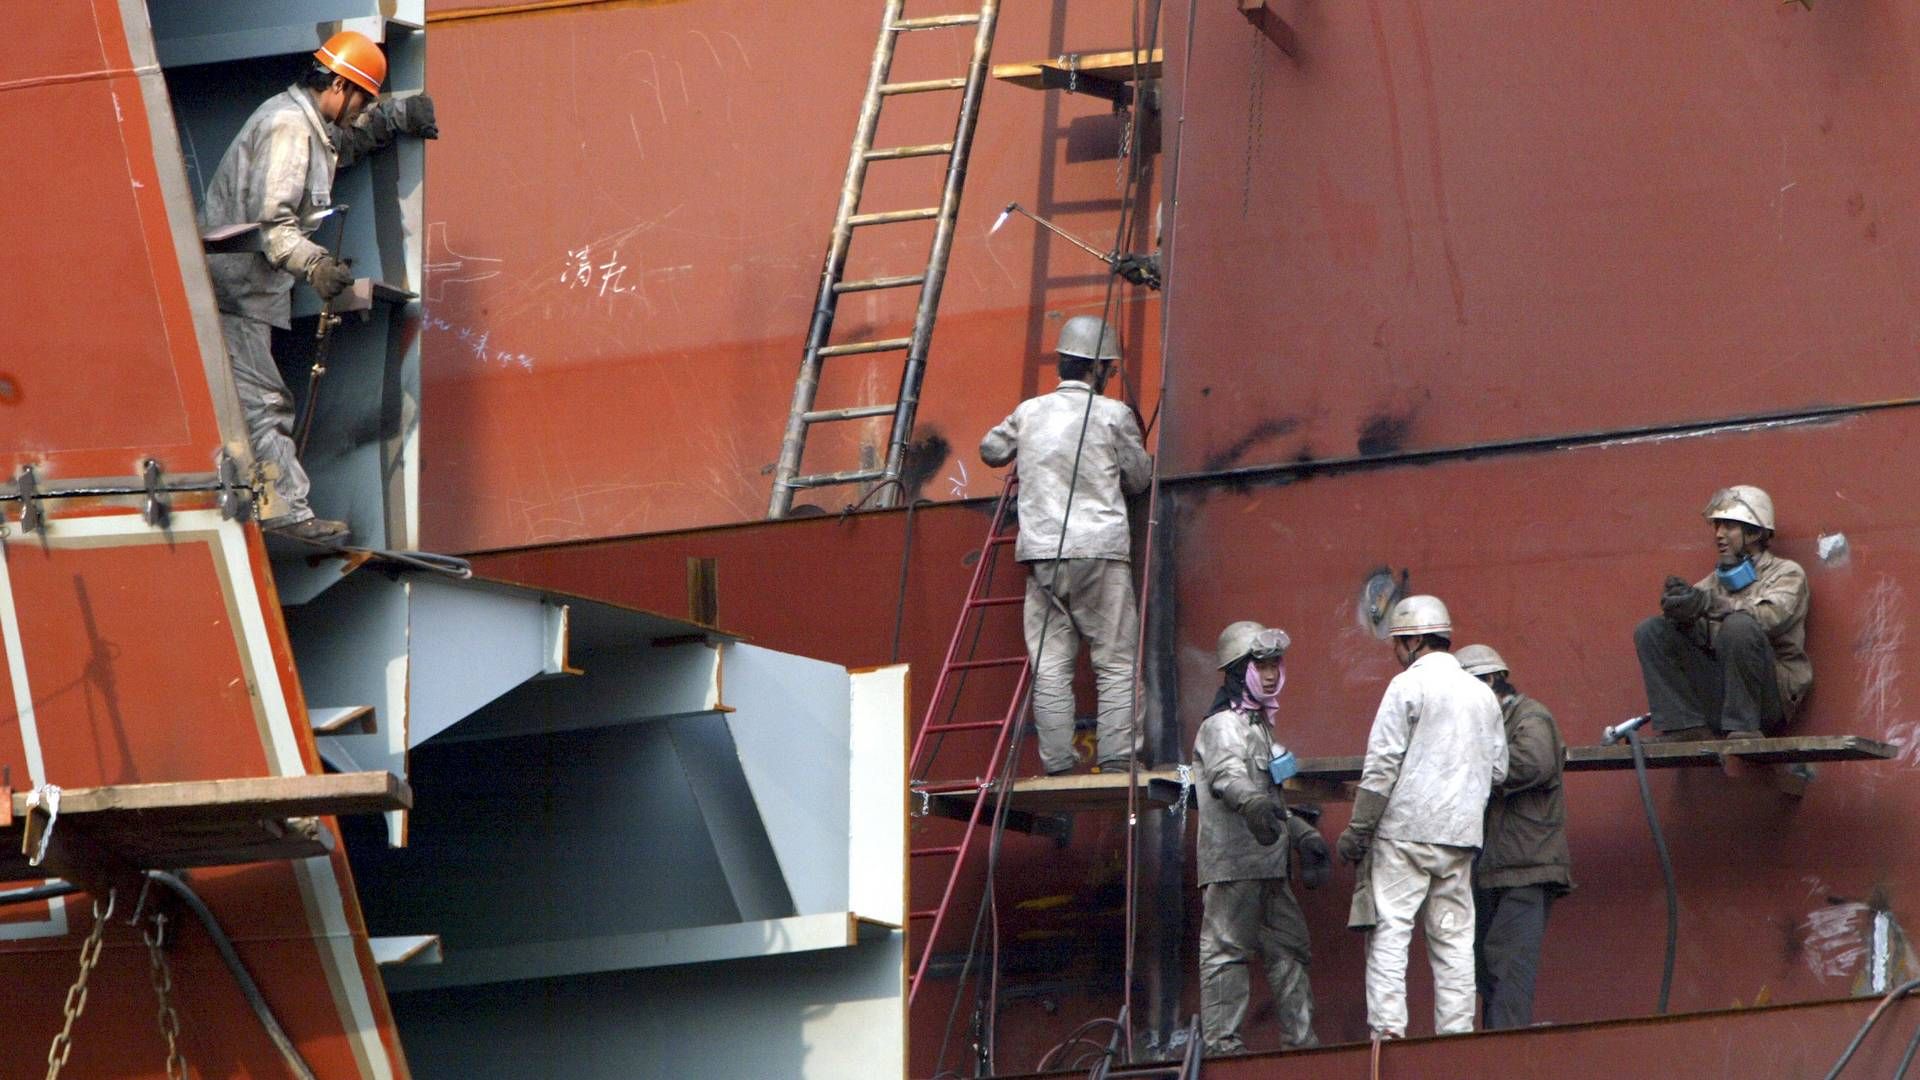 Siden 1996 har 310 mennesker mistet livet i lukkede rum på skibe. Det gælder 224 søfarende og 86 landarbejdere i sammenlagt 197 ulykker. | Foto: Claro Cortes Iv/Reuters/Ritzau Scanpix